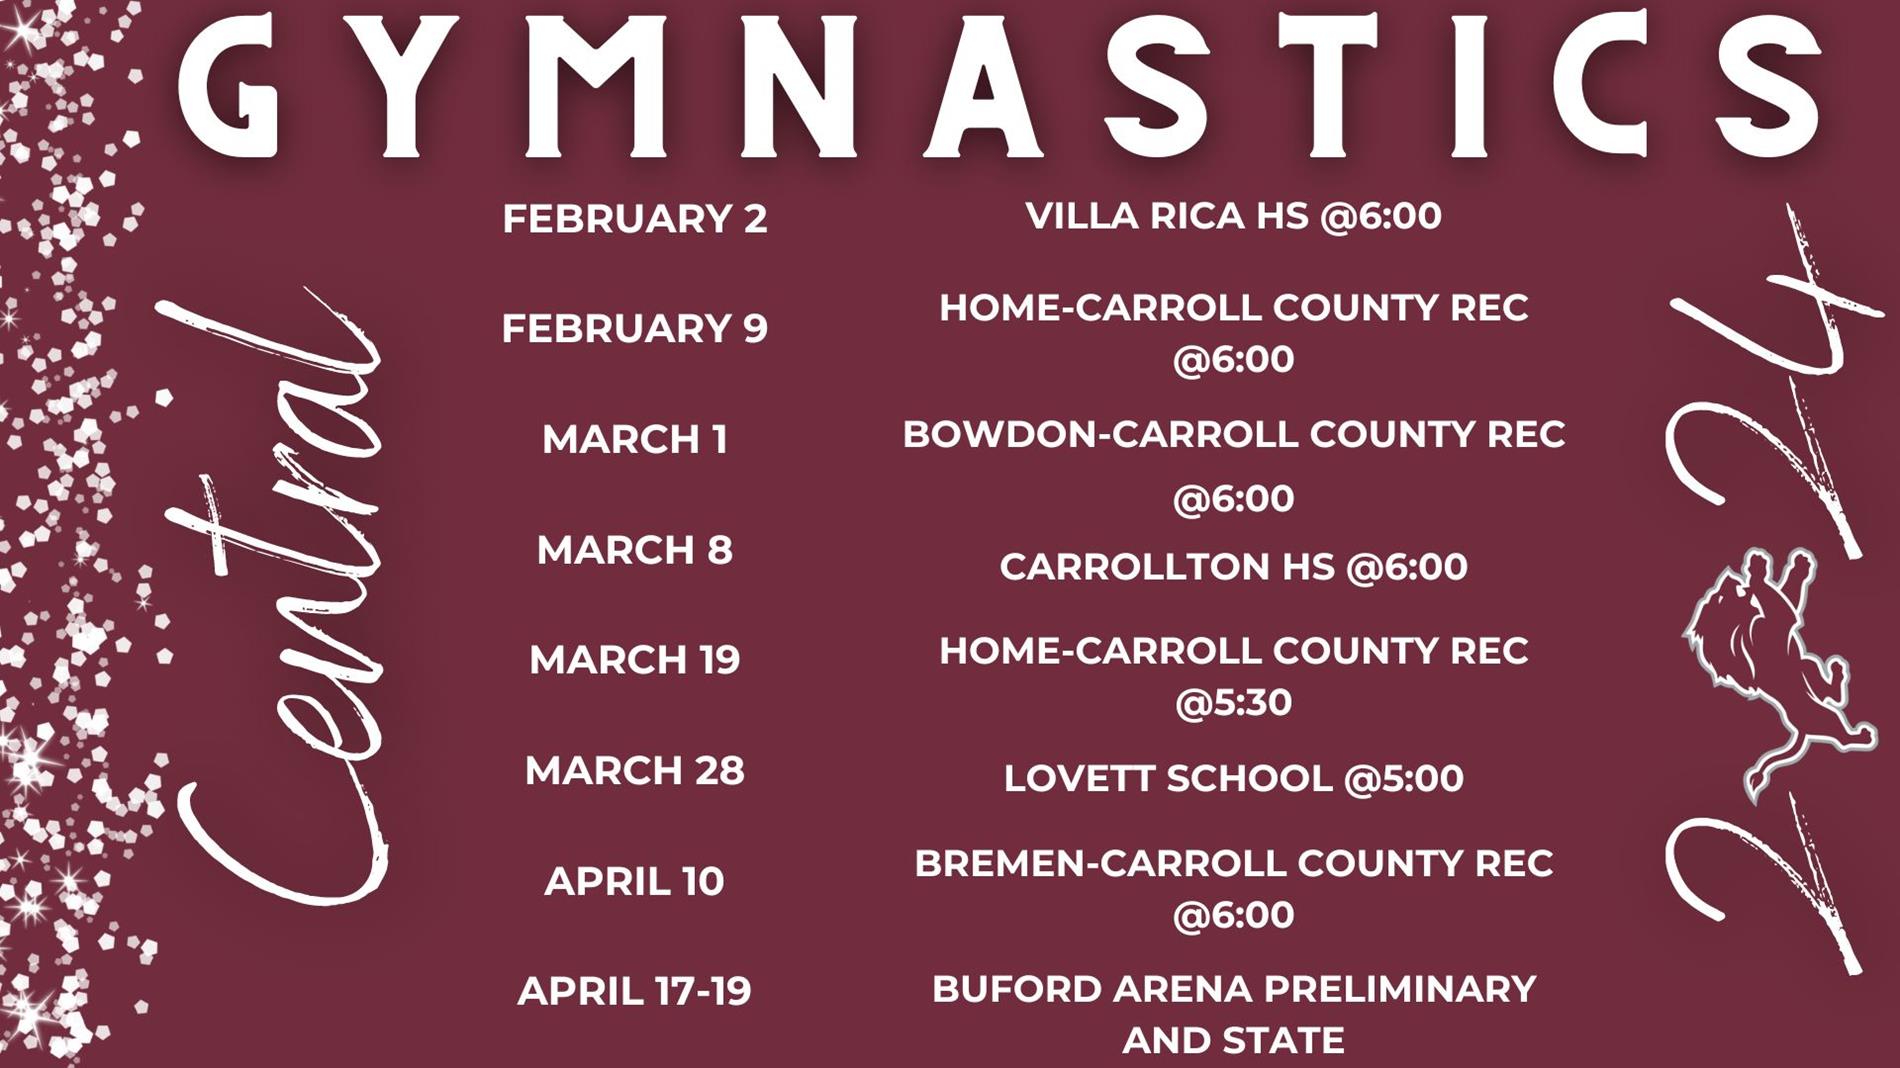 Gymnastics schedule